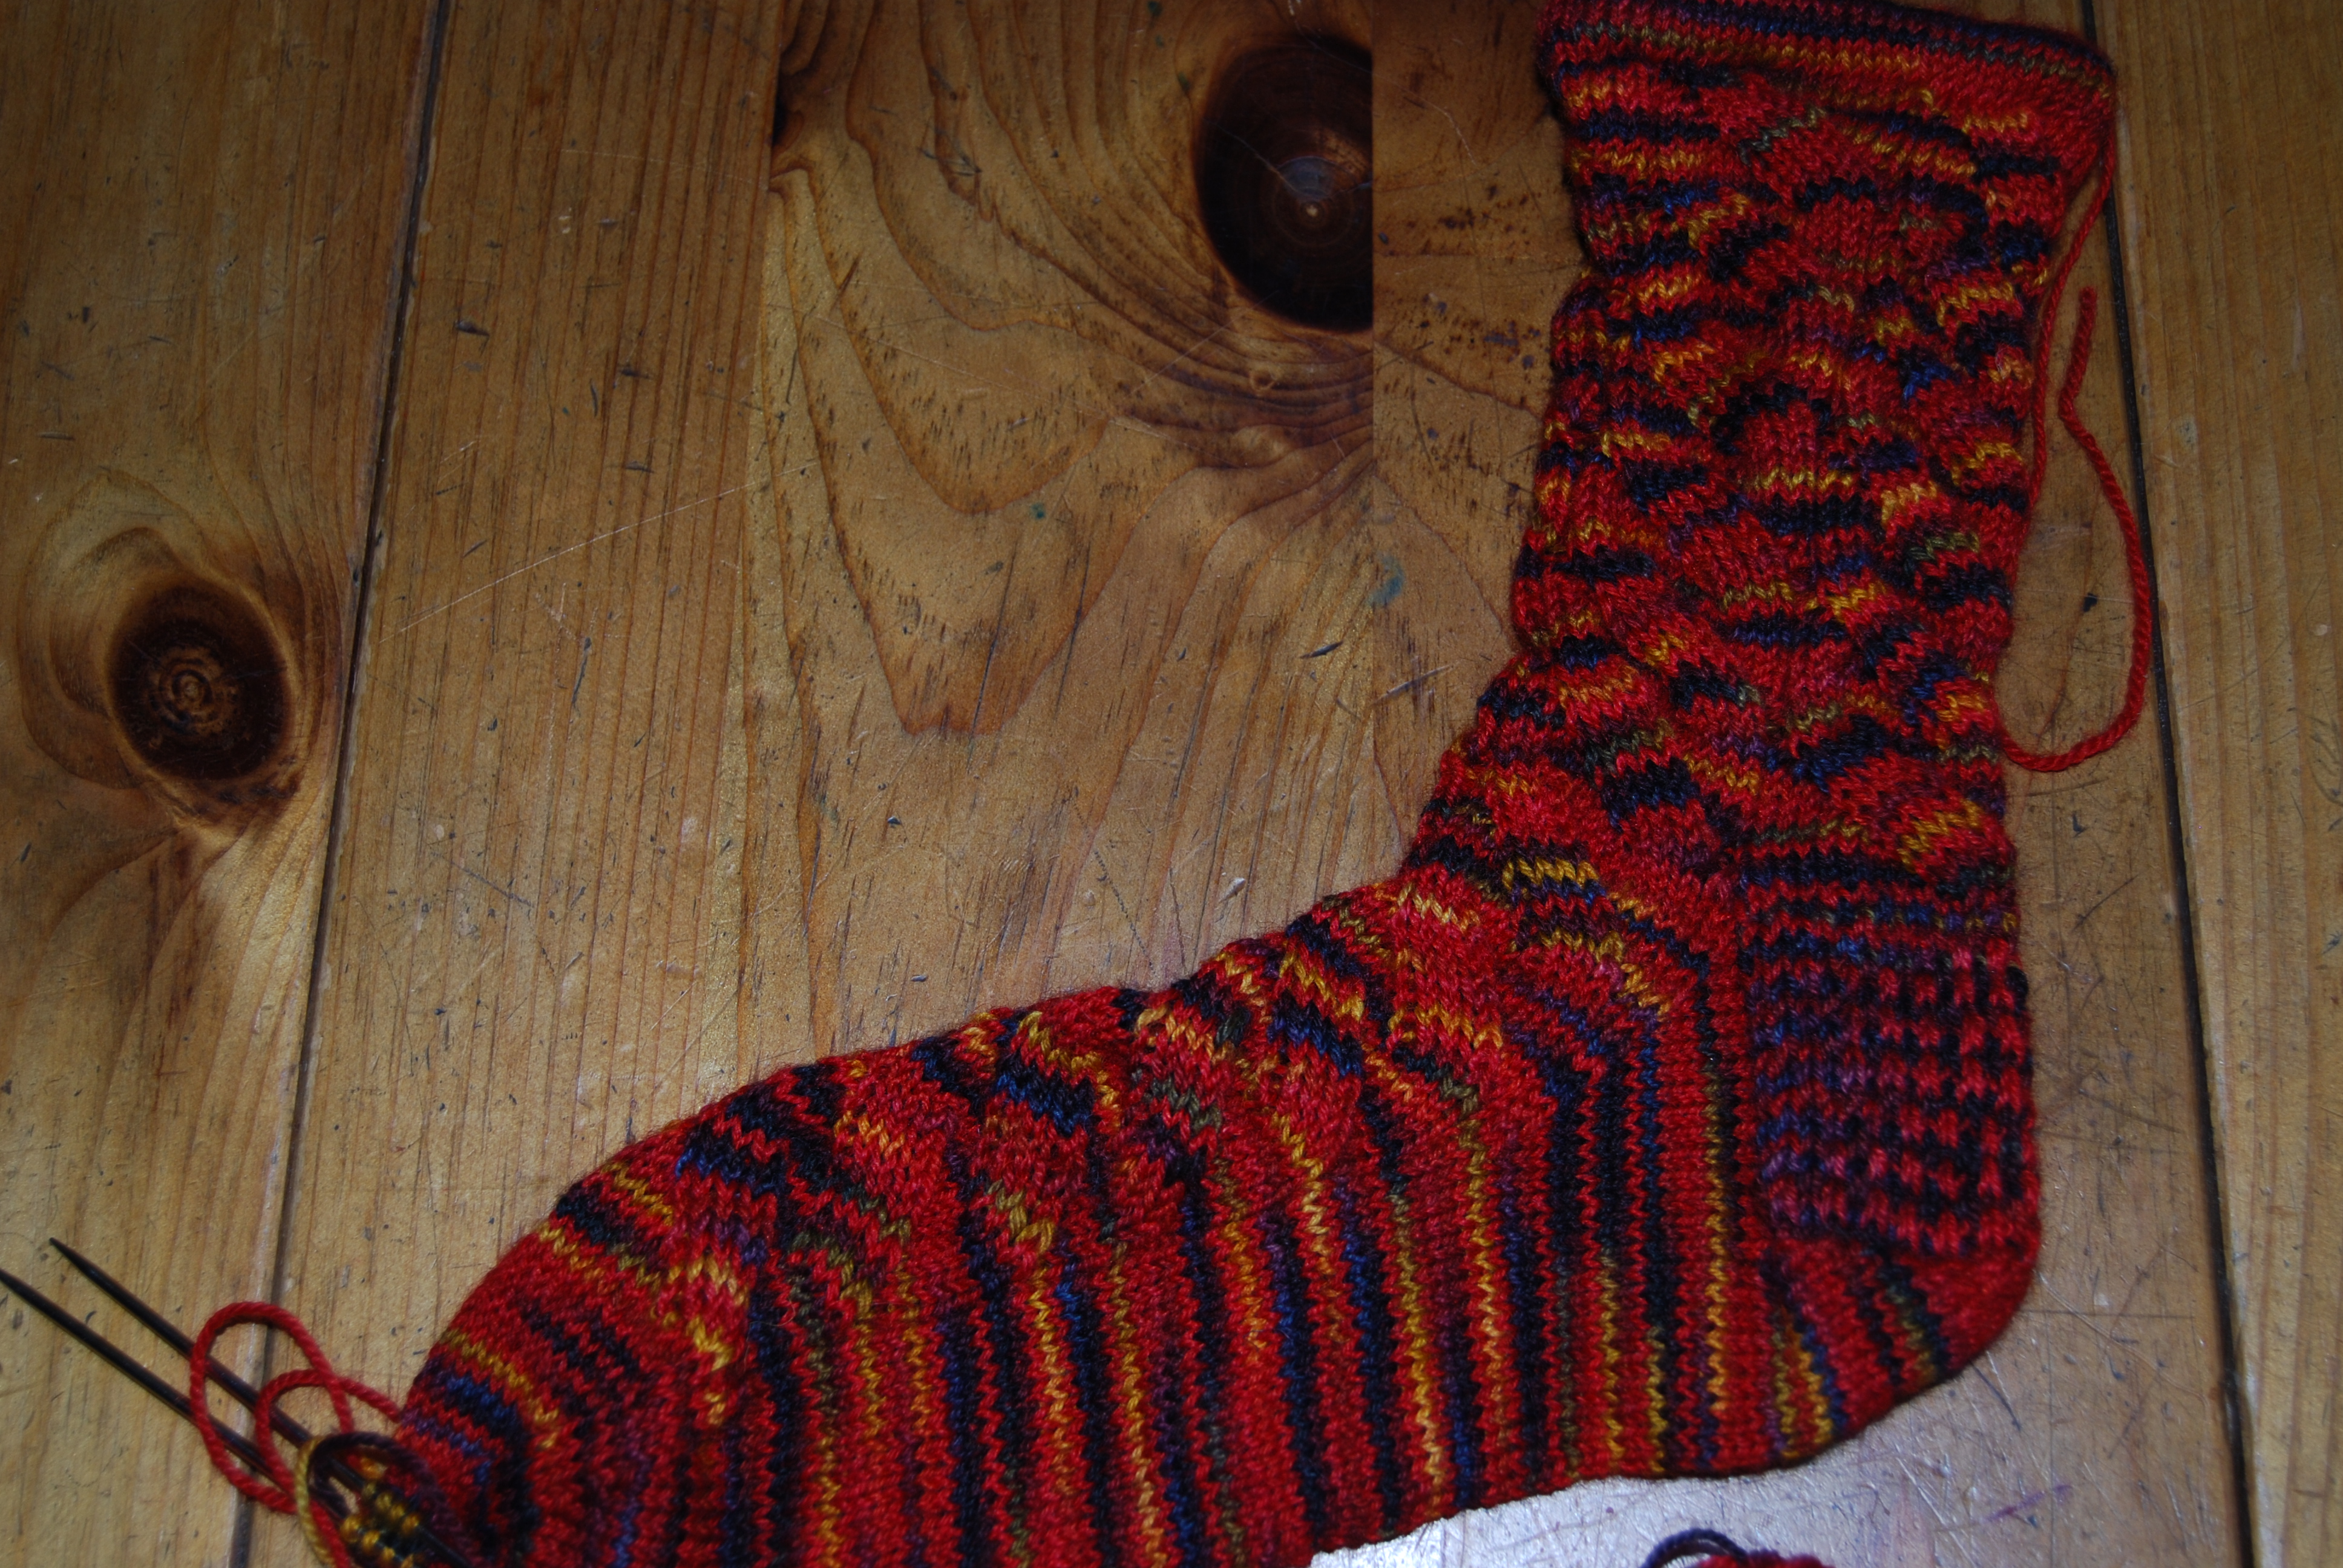 Fleece Artist yarn in Nutkin pattern